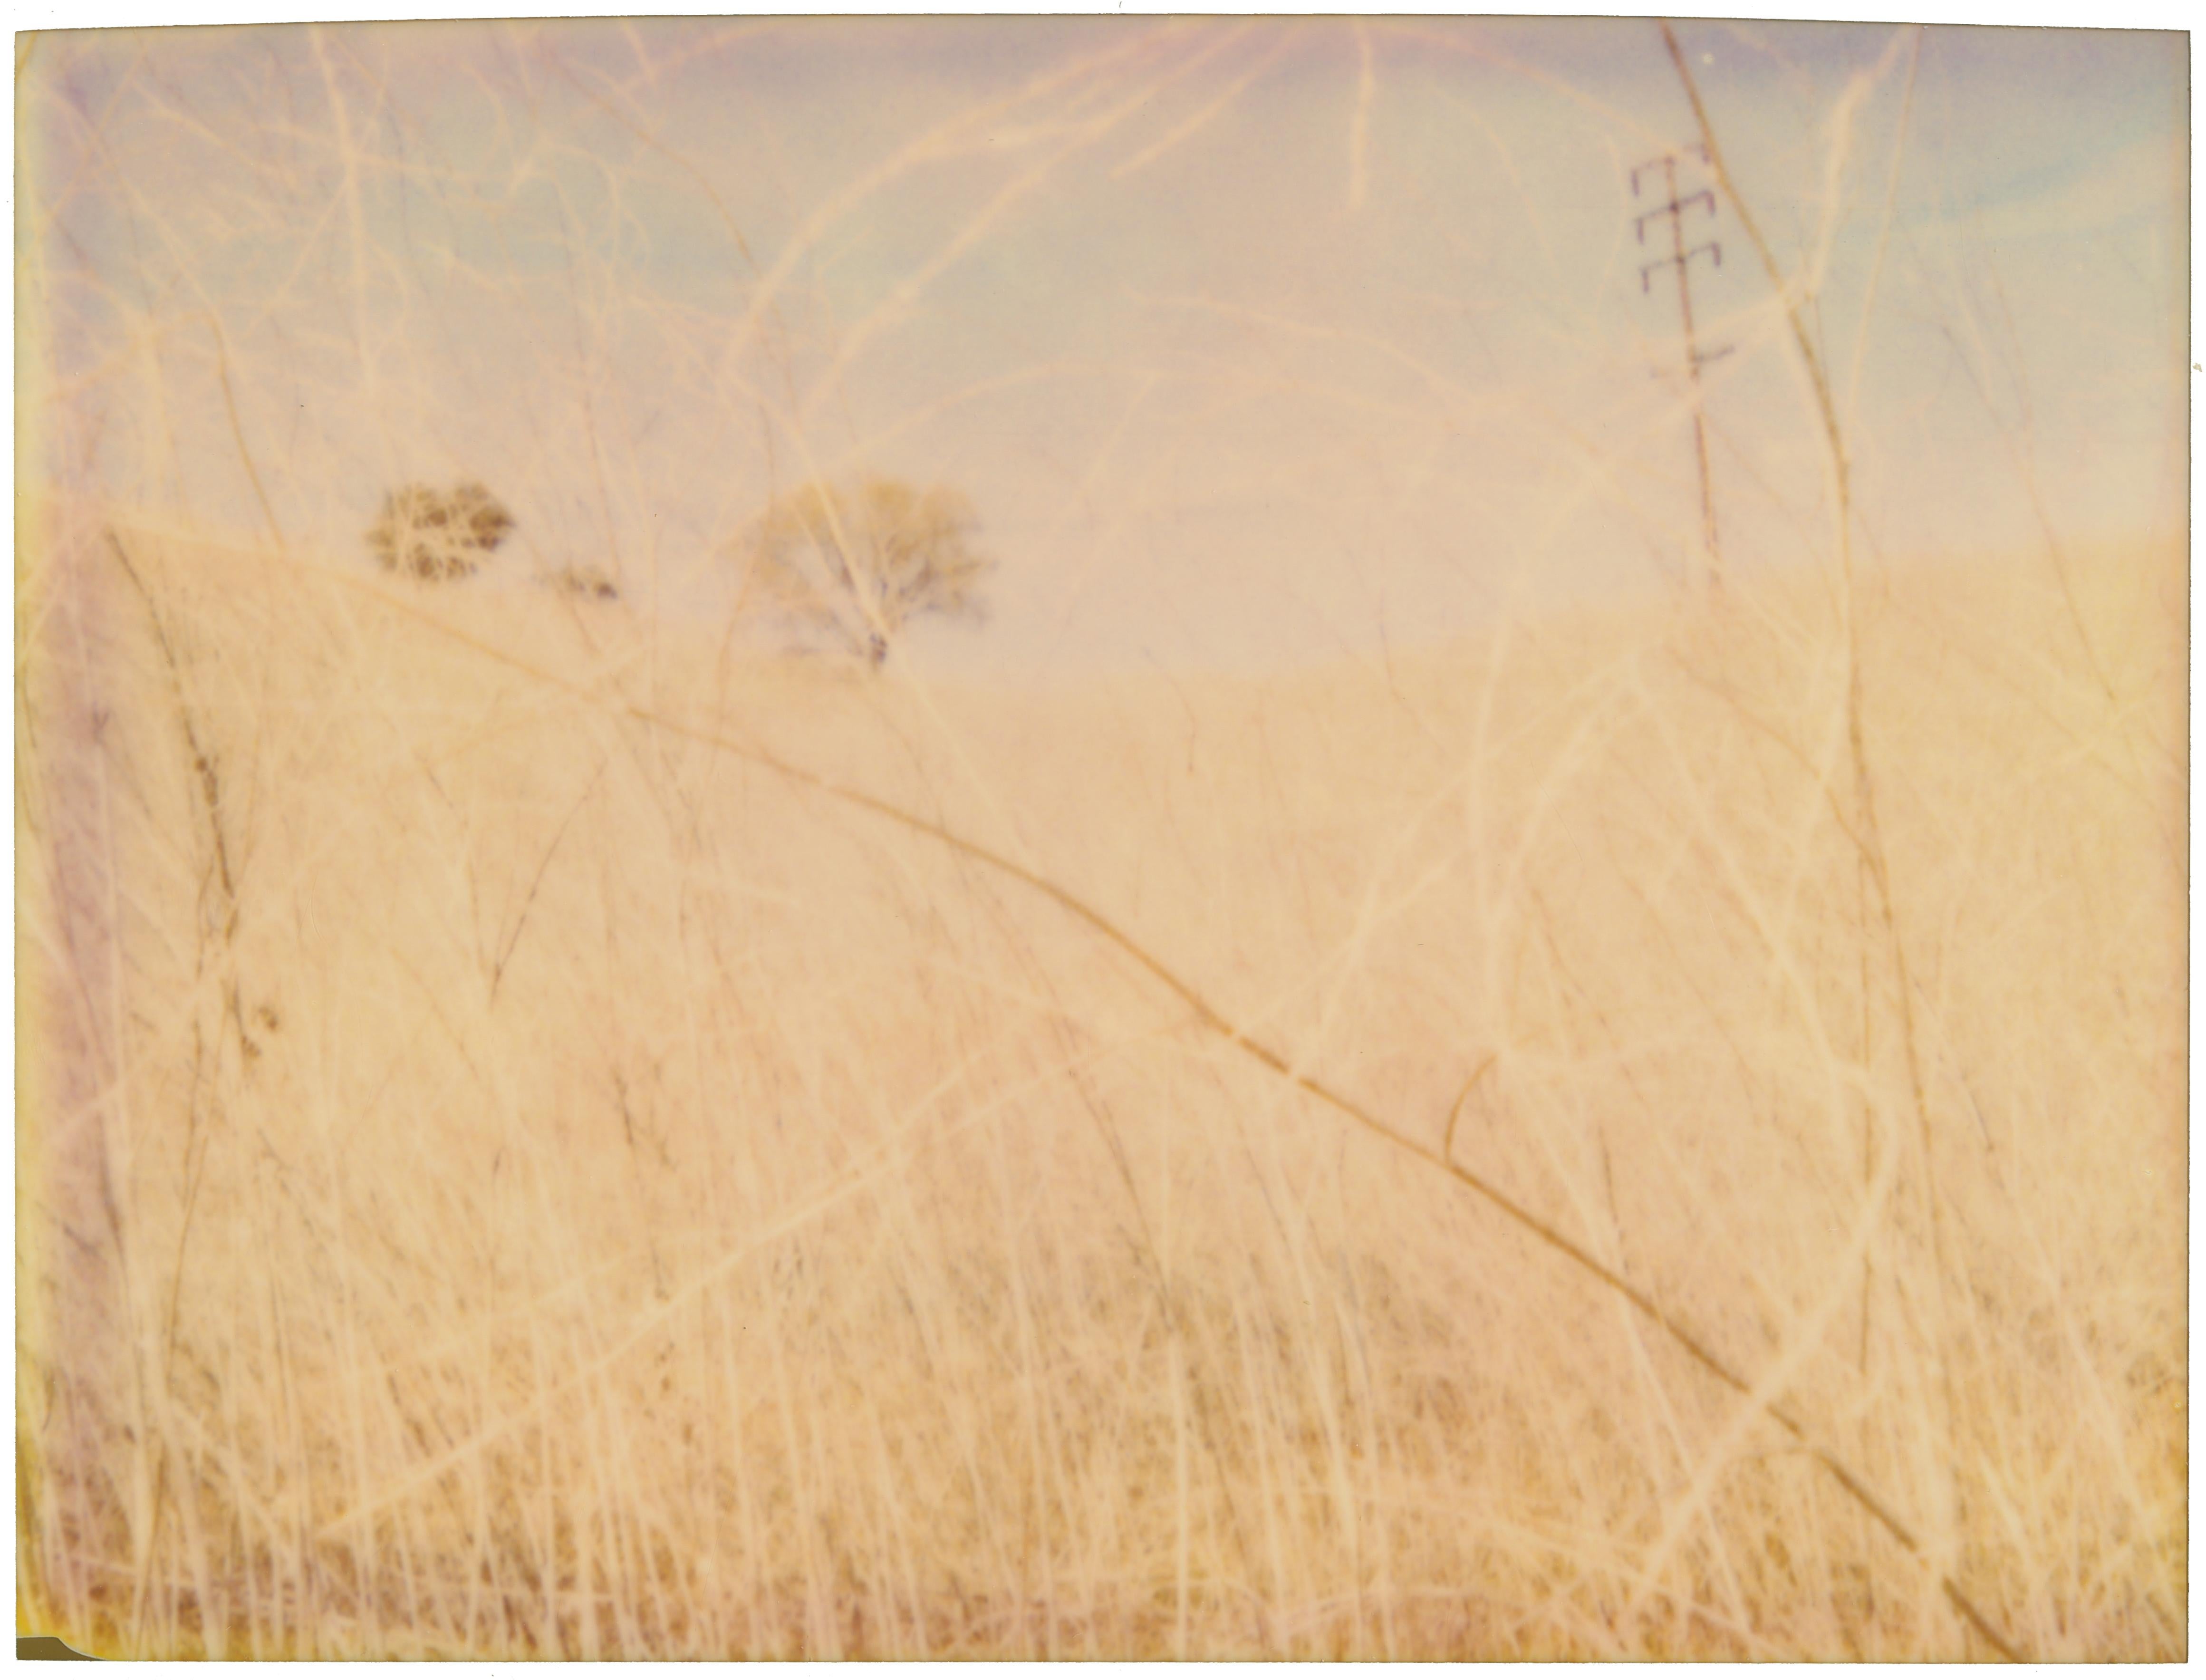 Stefanie Schneider Portrait Photograph - The Field (Musica Poetica) - analog